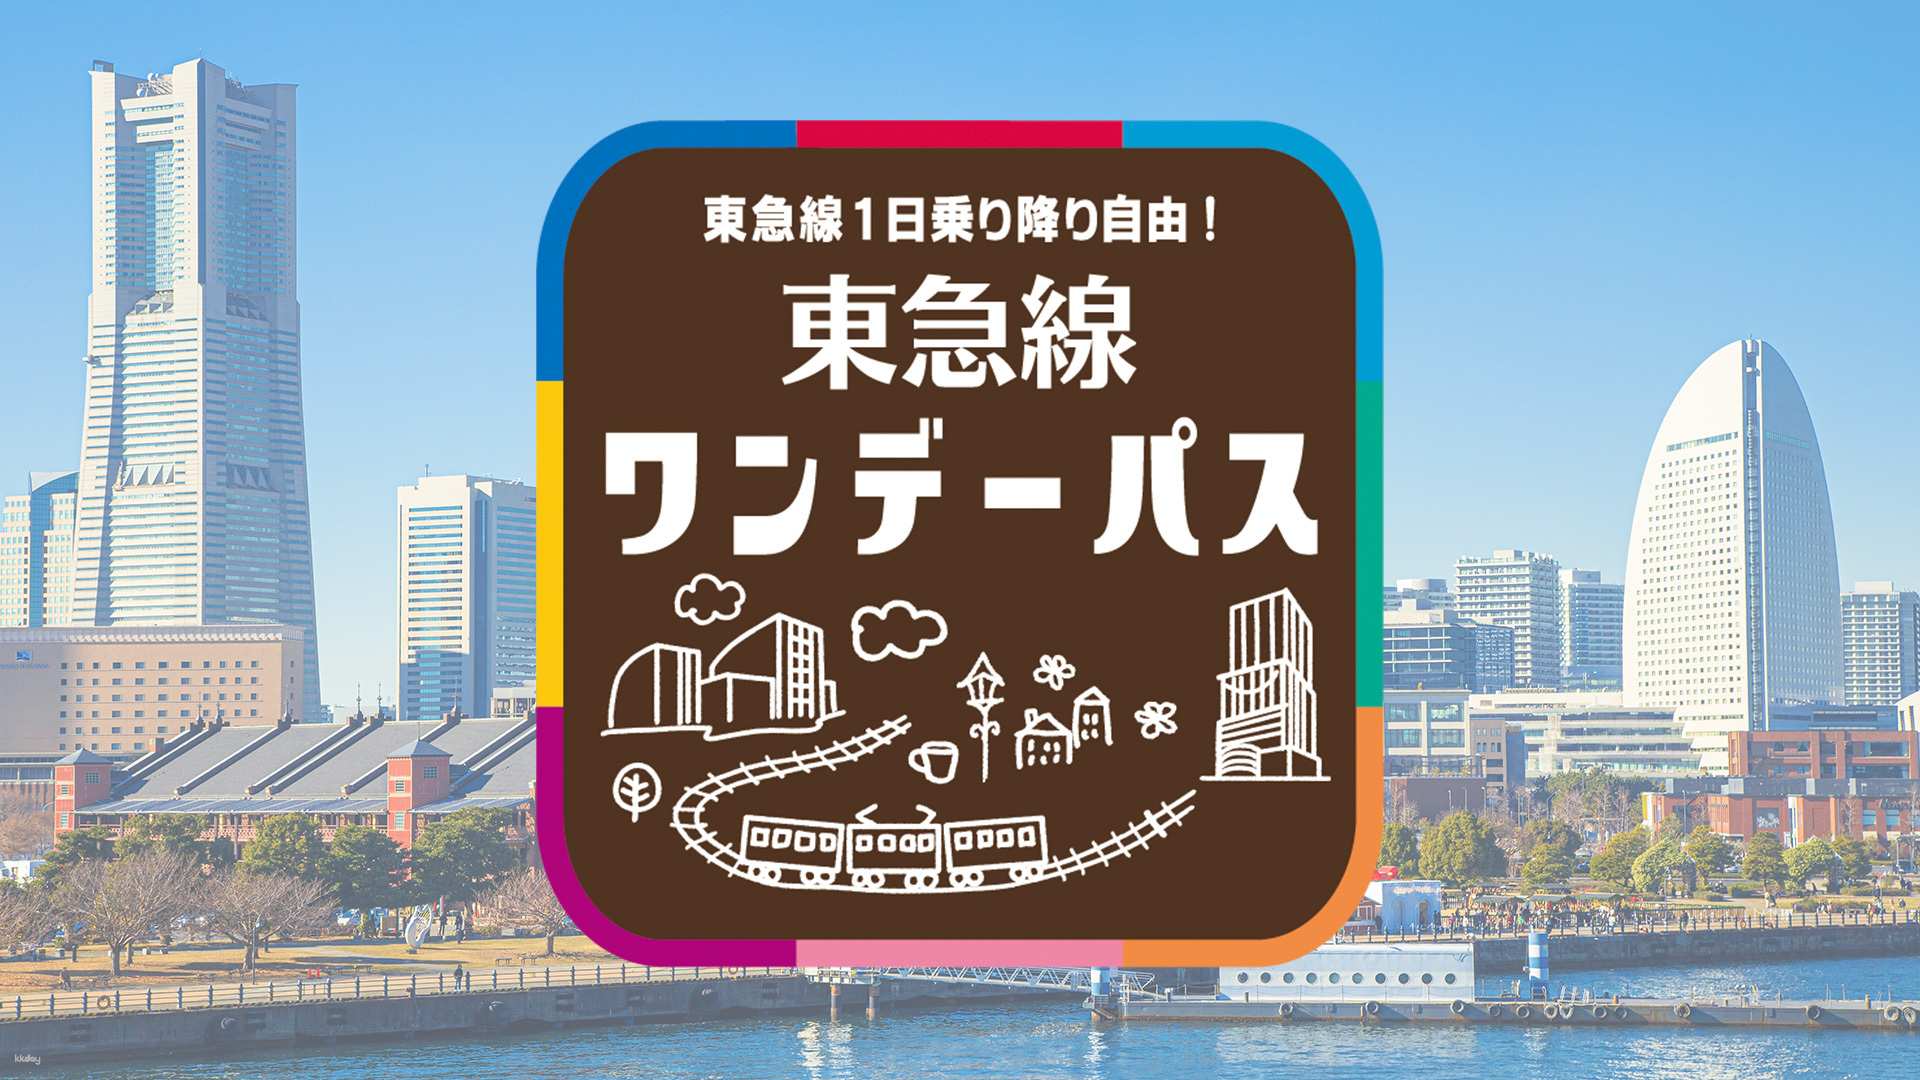 日本-東京東急線一日券 Tokyu Line 1-Day Pass